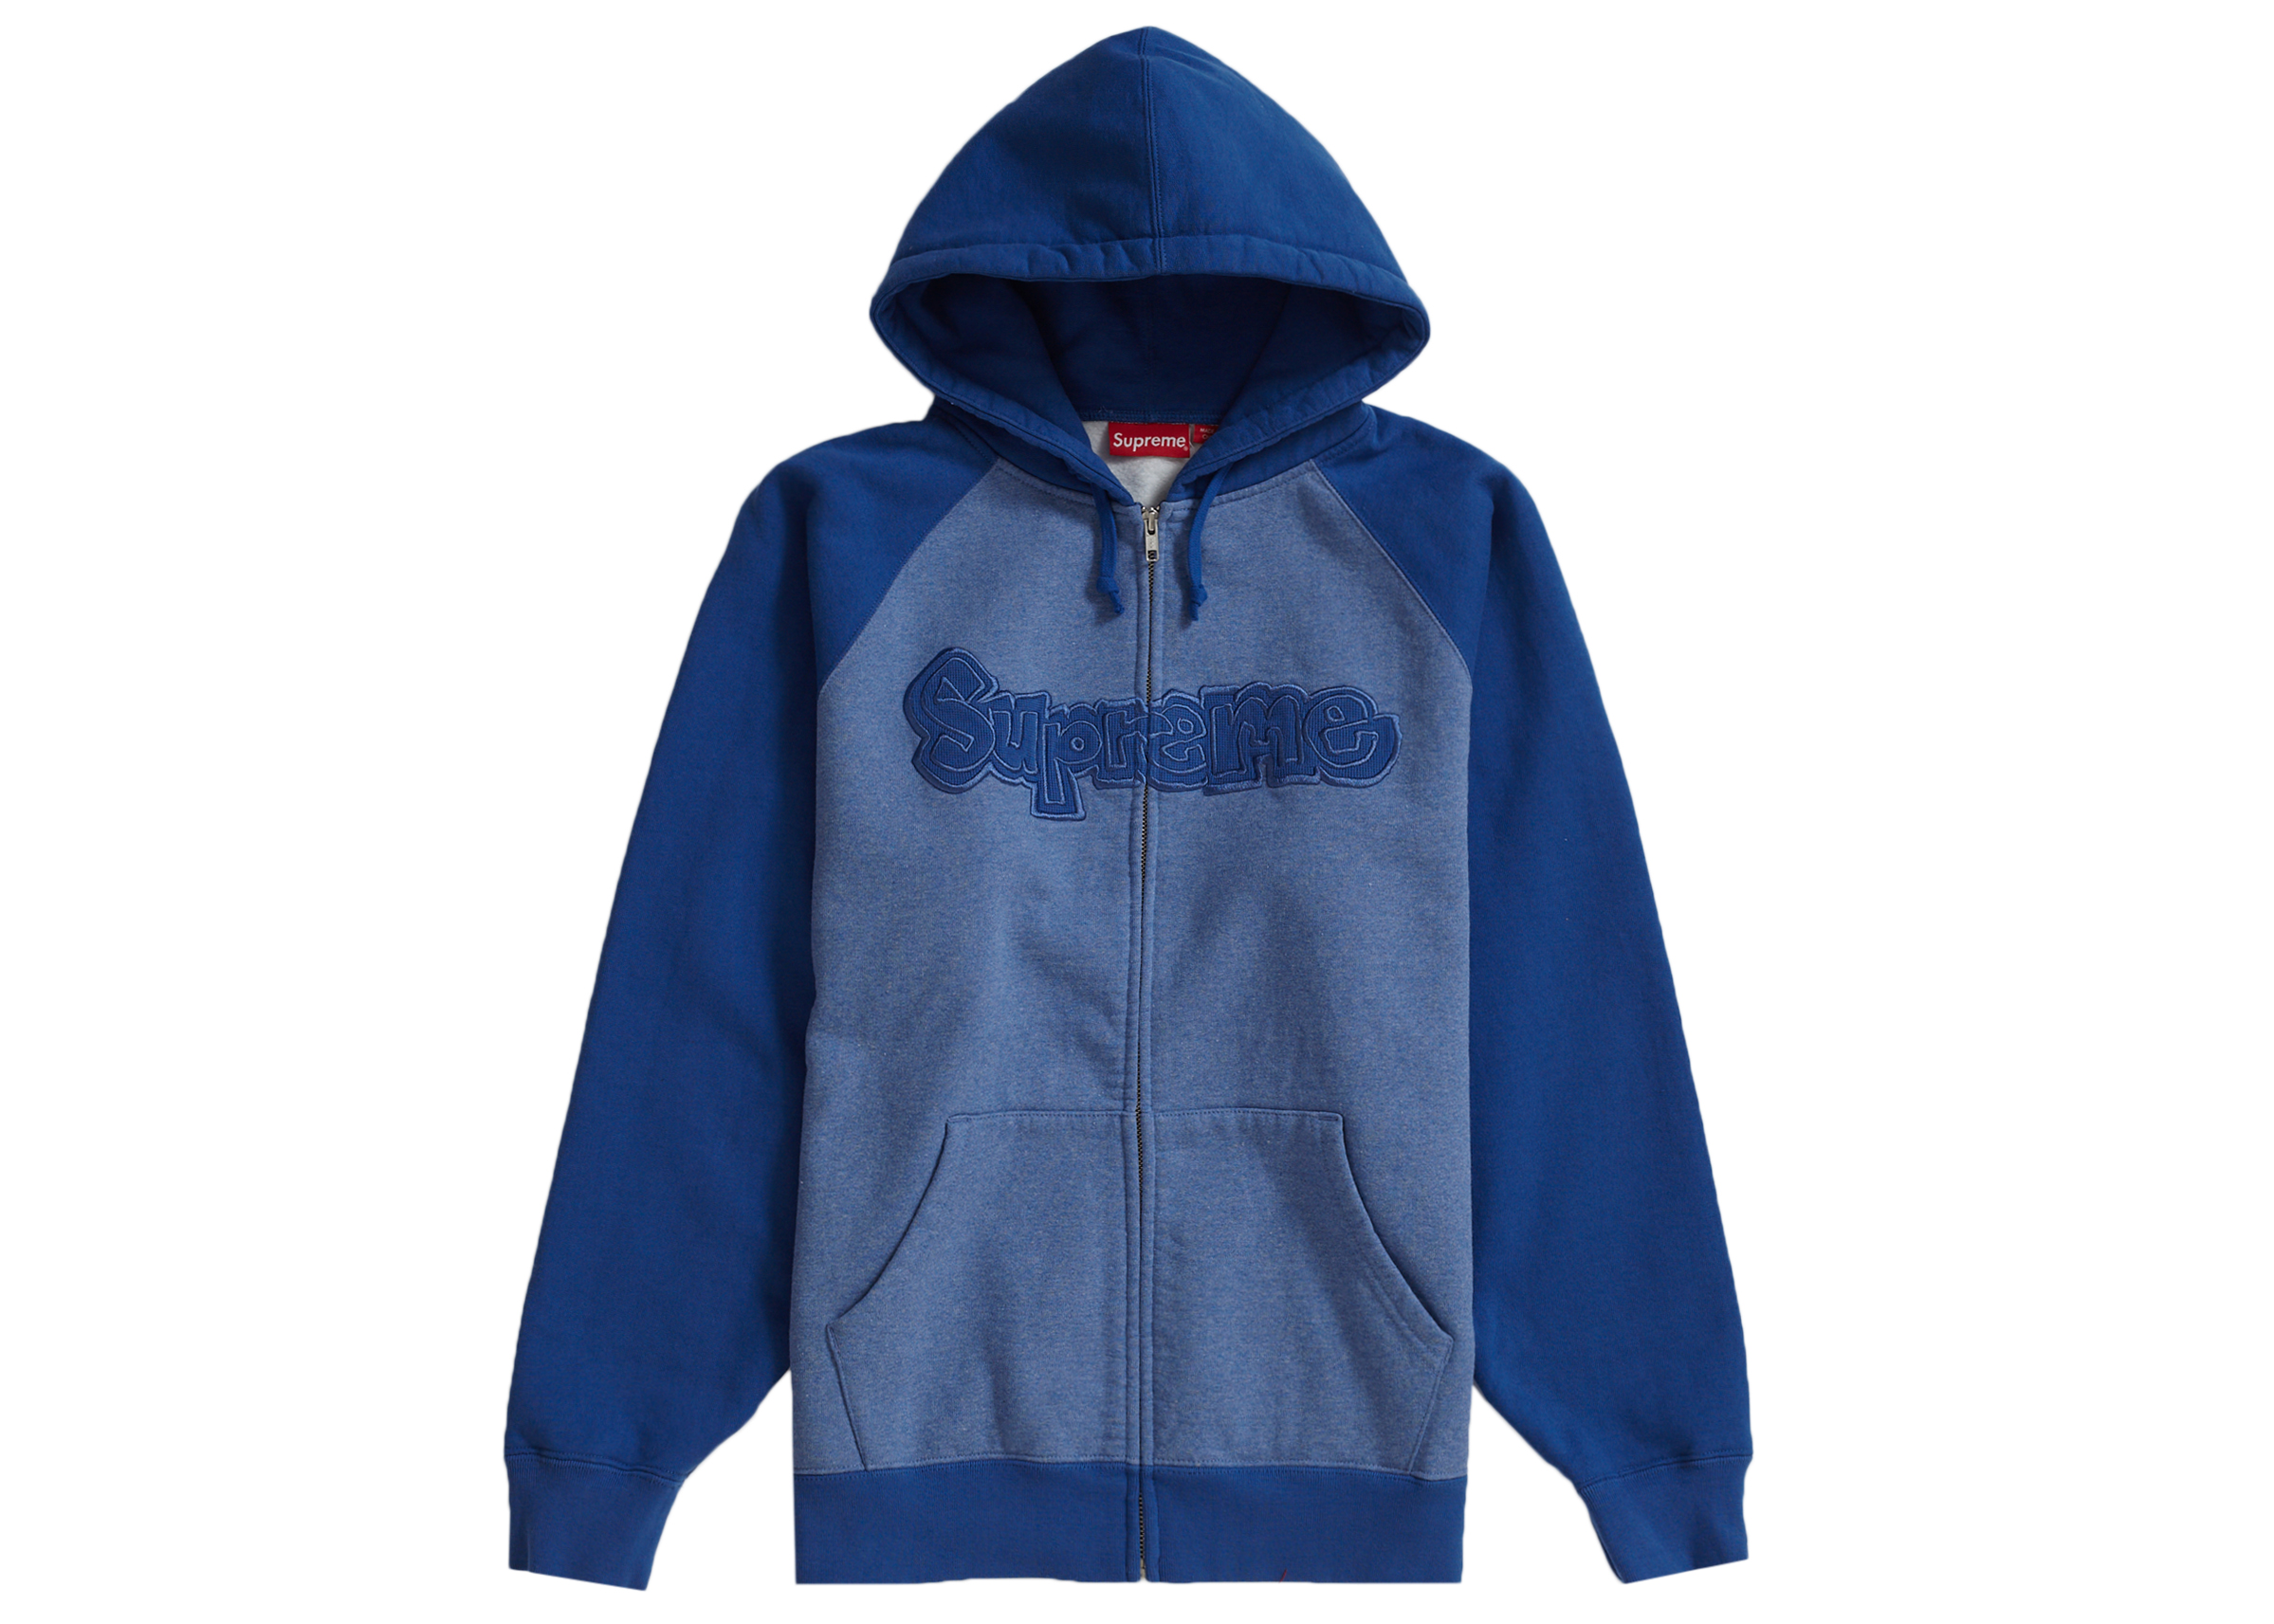 Style-NavySupreme Gonz Zip Up Hooded  Sweatshirt